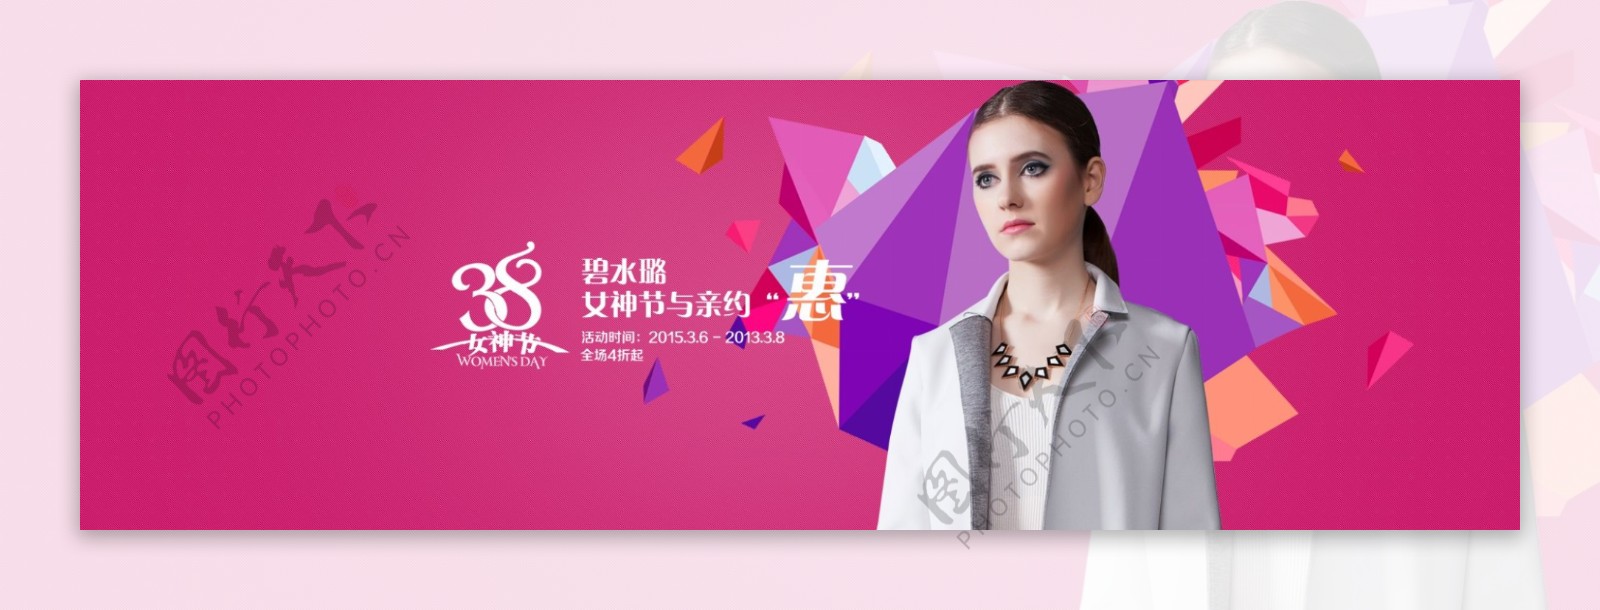 淘宝38妇女节促销海报PSD素材